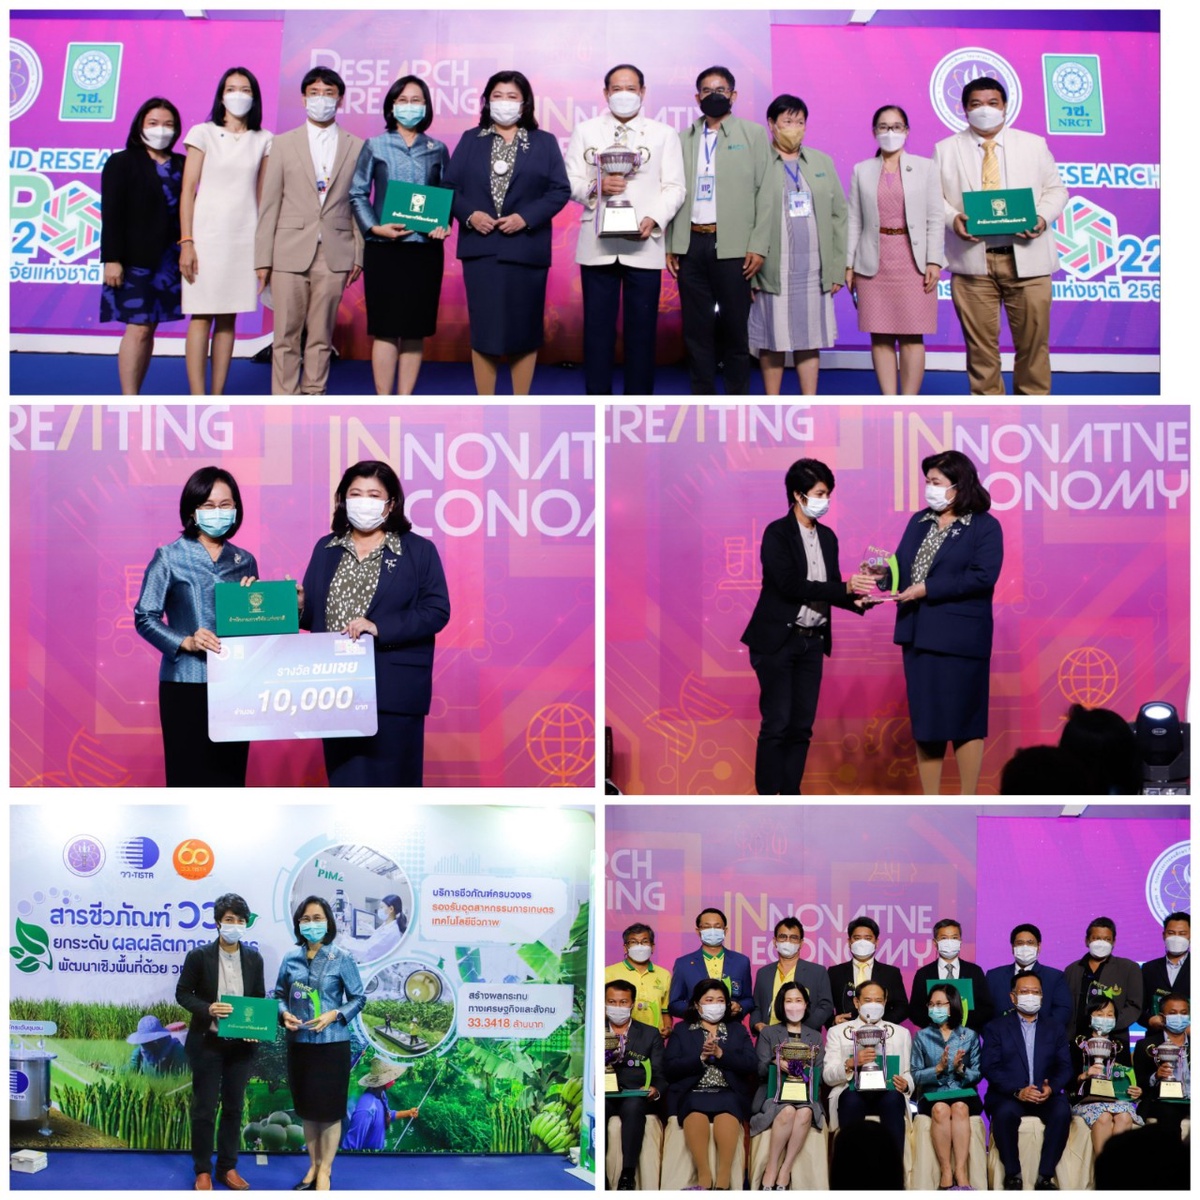 วว. คว้ารางวัล Thailand Research Expo Award 2022 จากการนำเสนอผลงาน สารชีวภัณฑ์ วว. ยกระดับผลผลิตการเกษตร พัฒนาเชิงพื้นที่ด้วย